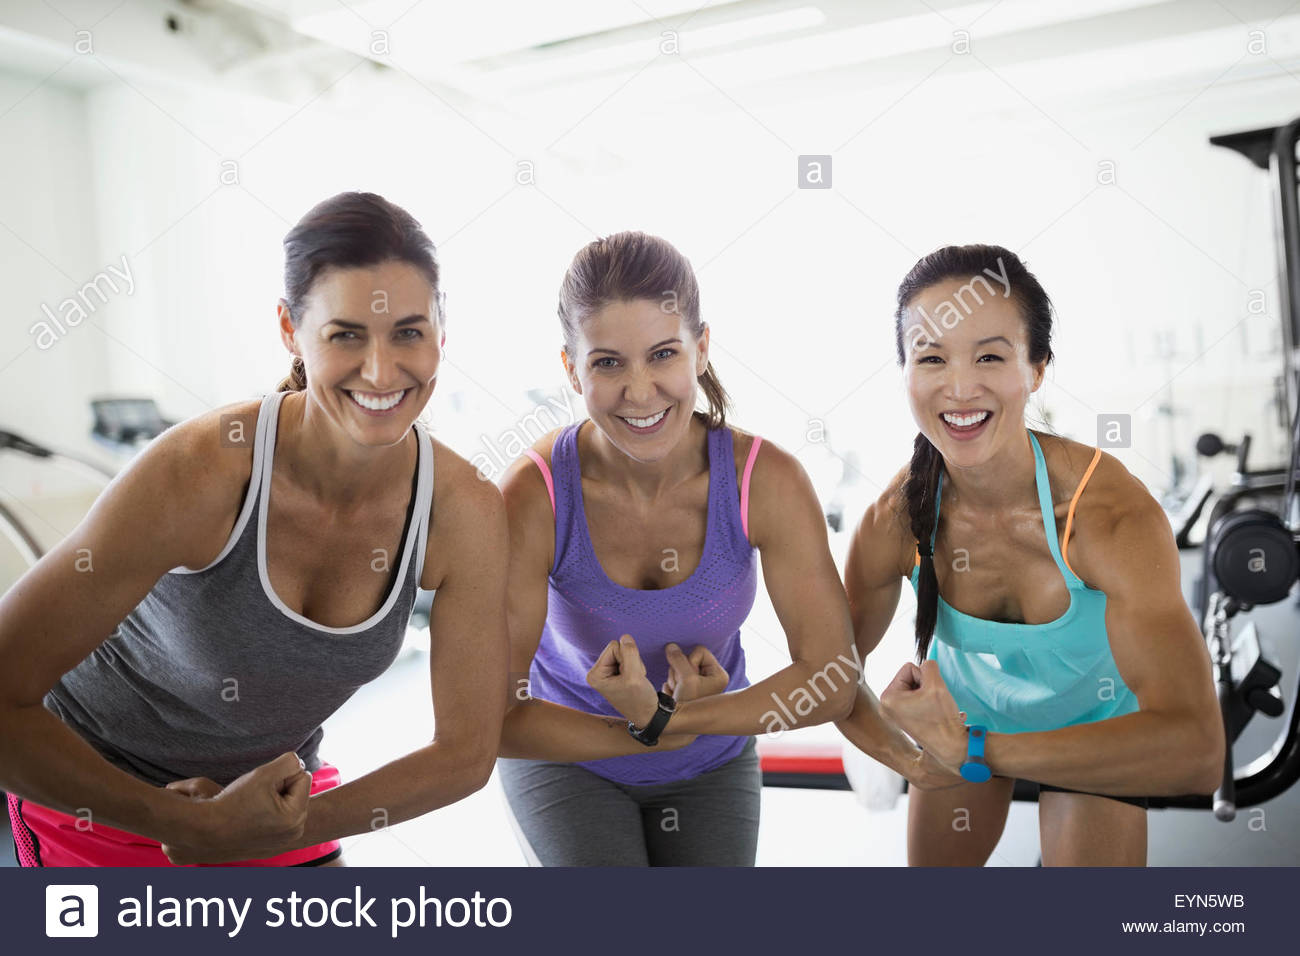 Portrait confident women flexing muscles at gym Stock Photo